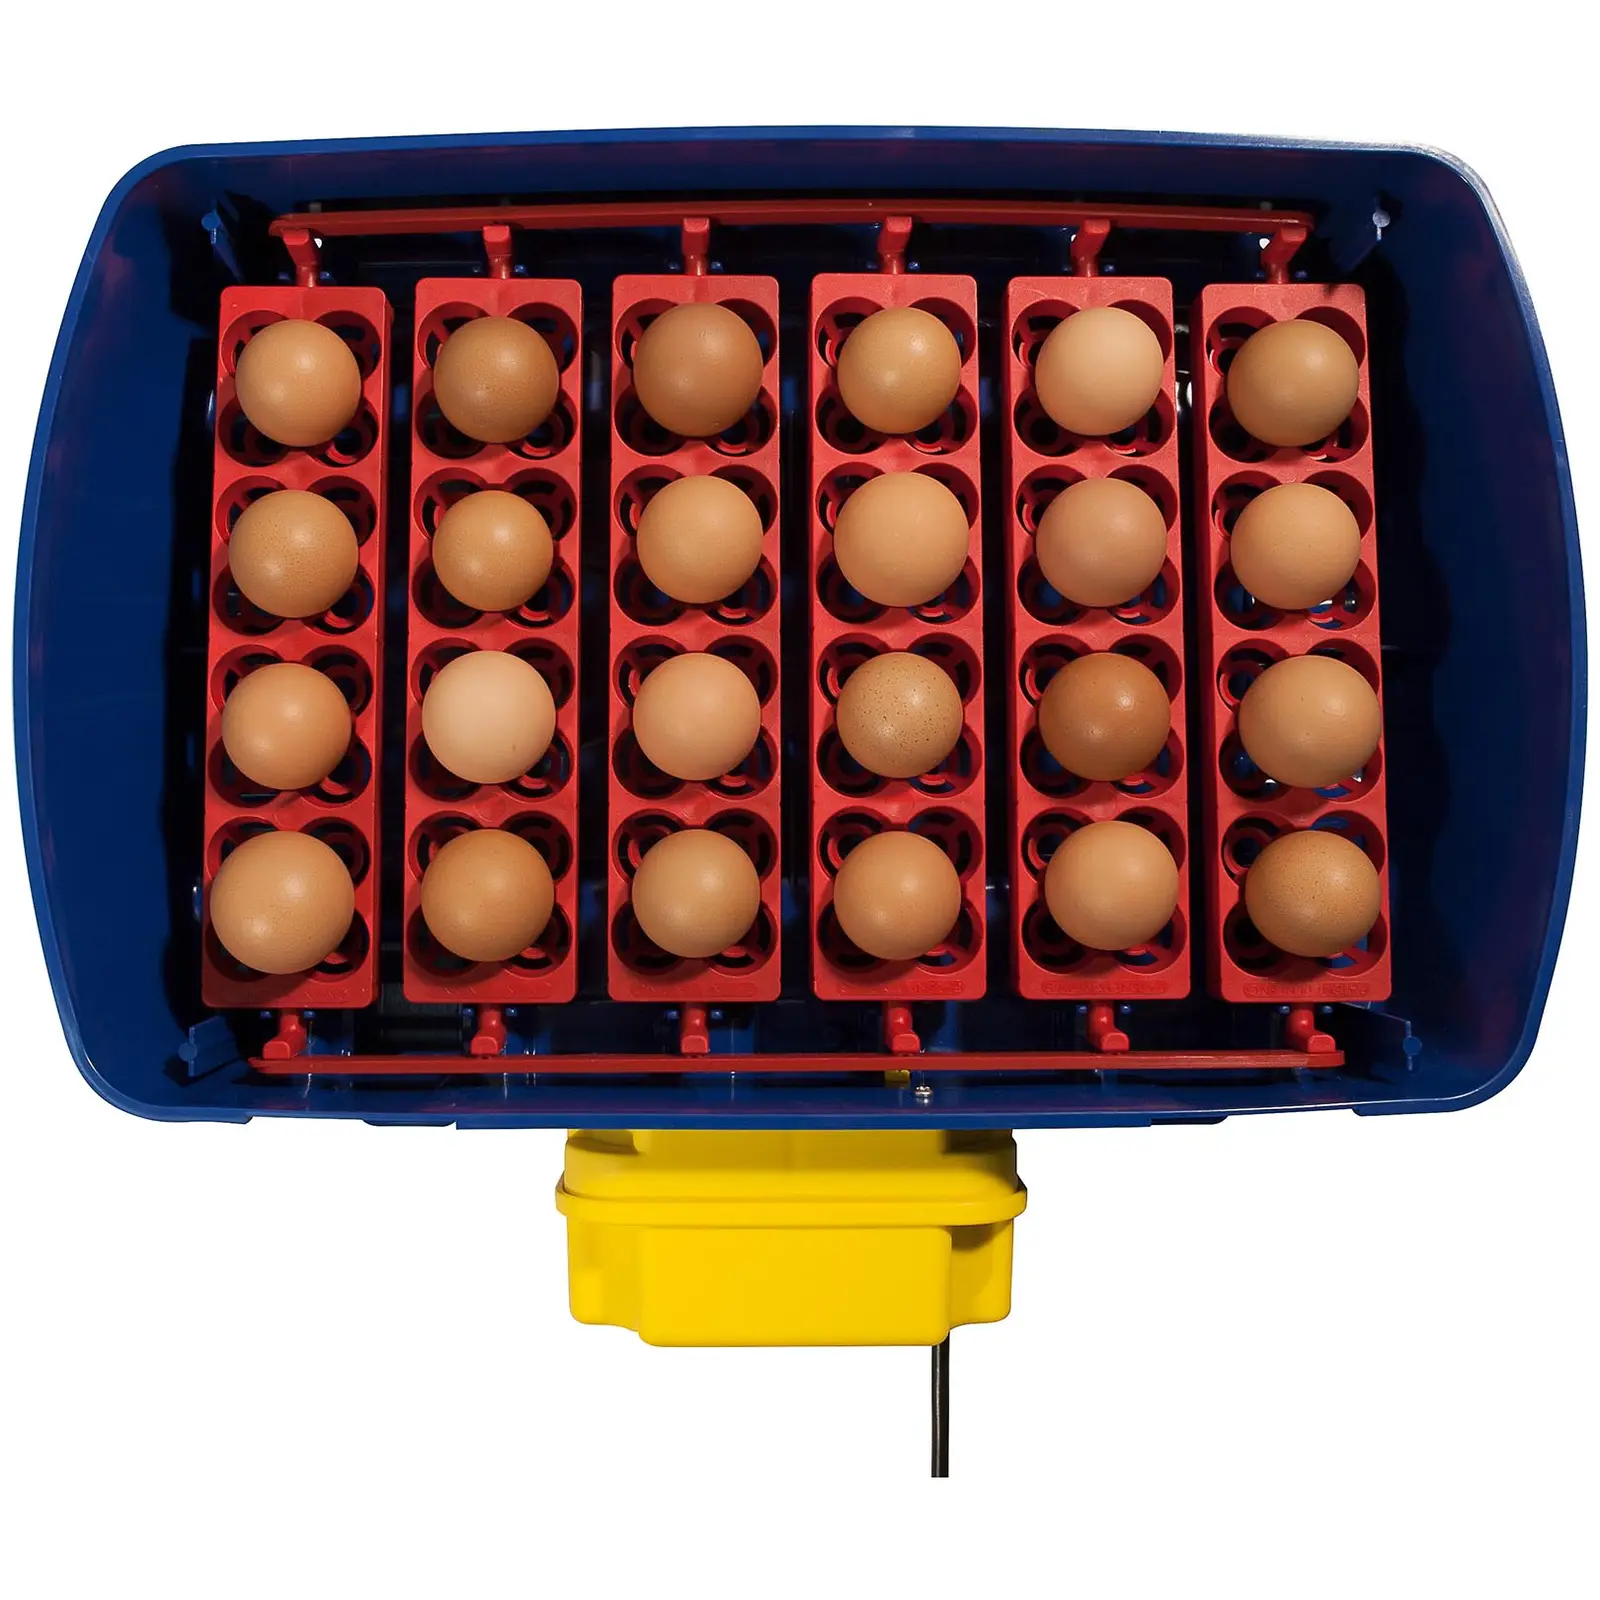 Brutapparat - 24 Eier - inklusive Bewässerungssystem - vollautomatisch